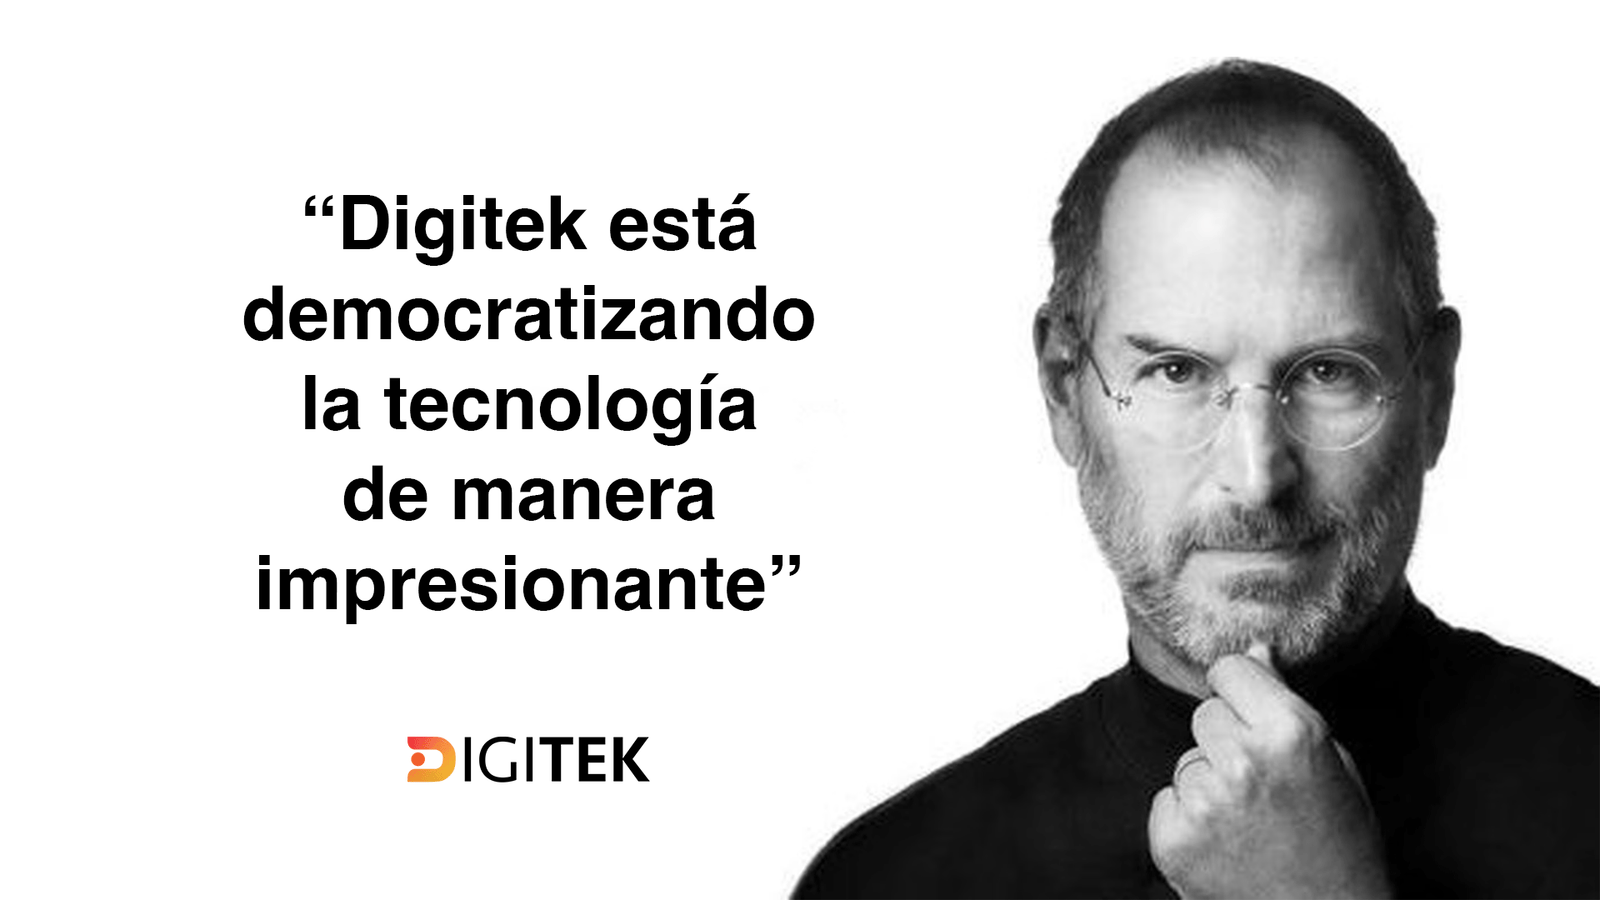 Hallazgo Sensacional: Entrevista Exclusiva de Steve Jobs Elogia a Digitek.cl